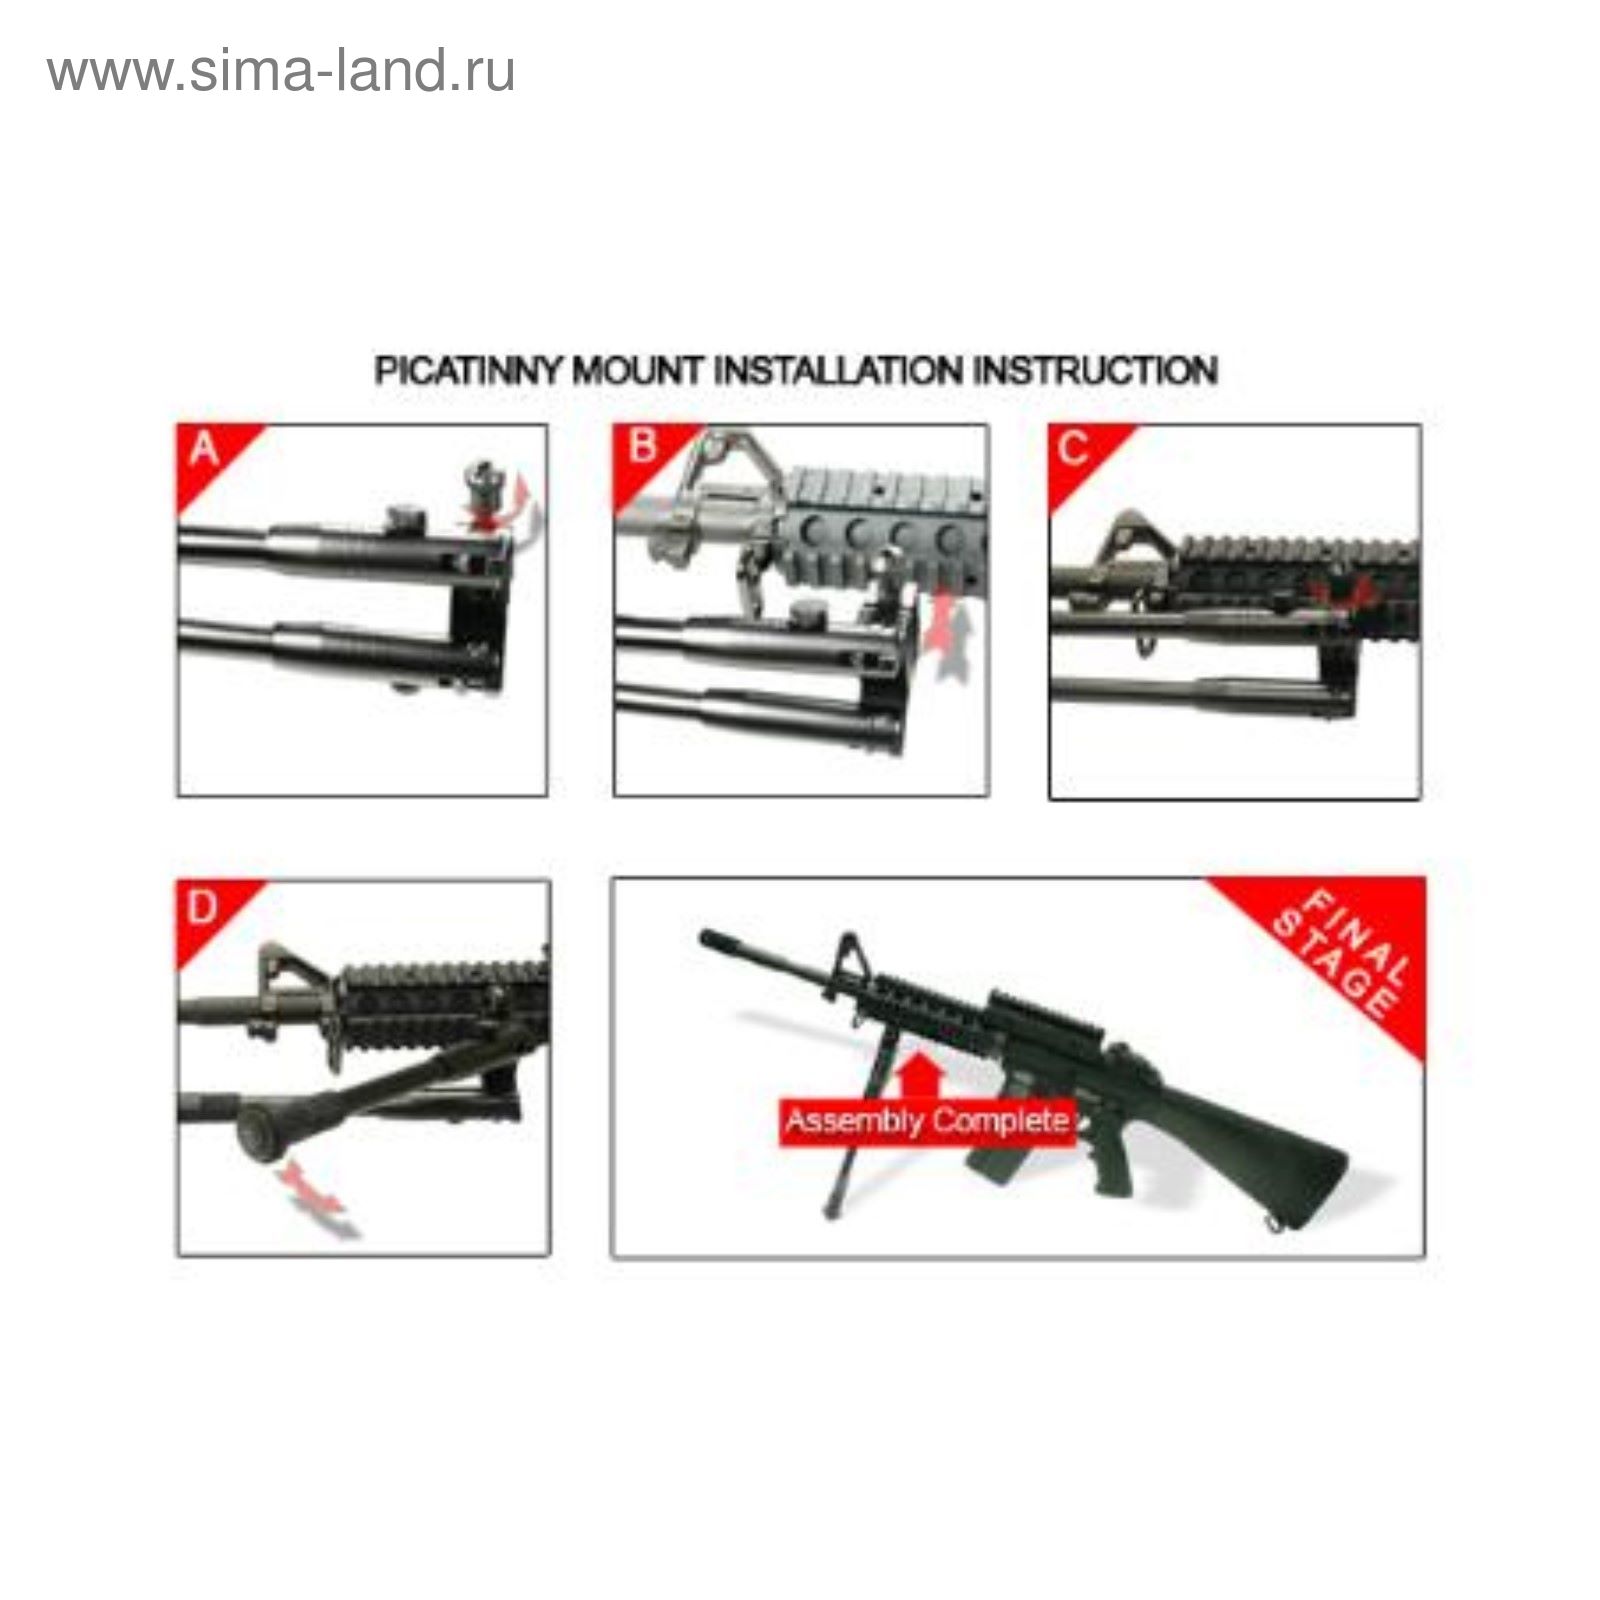 Сошки UTG для установки на оружие, регулируемые, на антабку и Picatinny, высота 23-28 см.